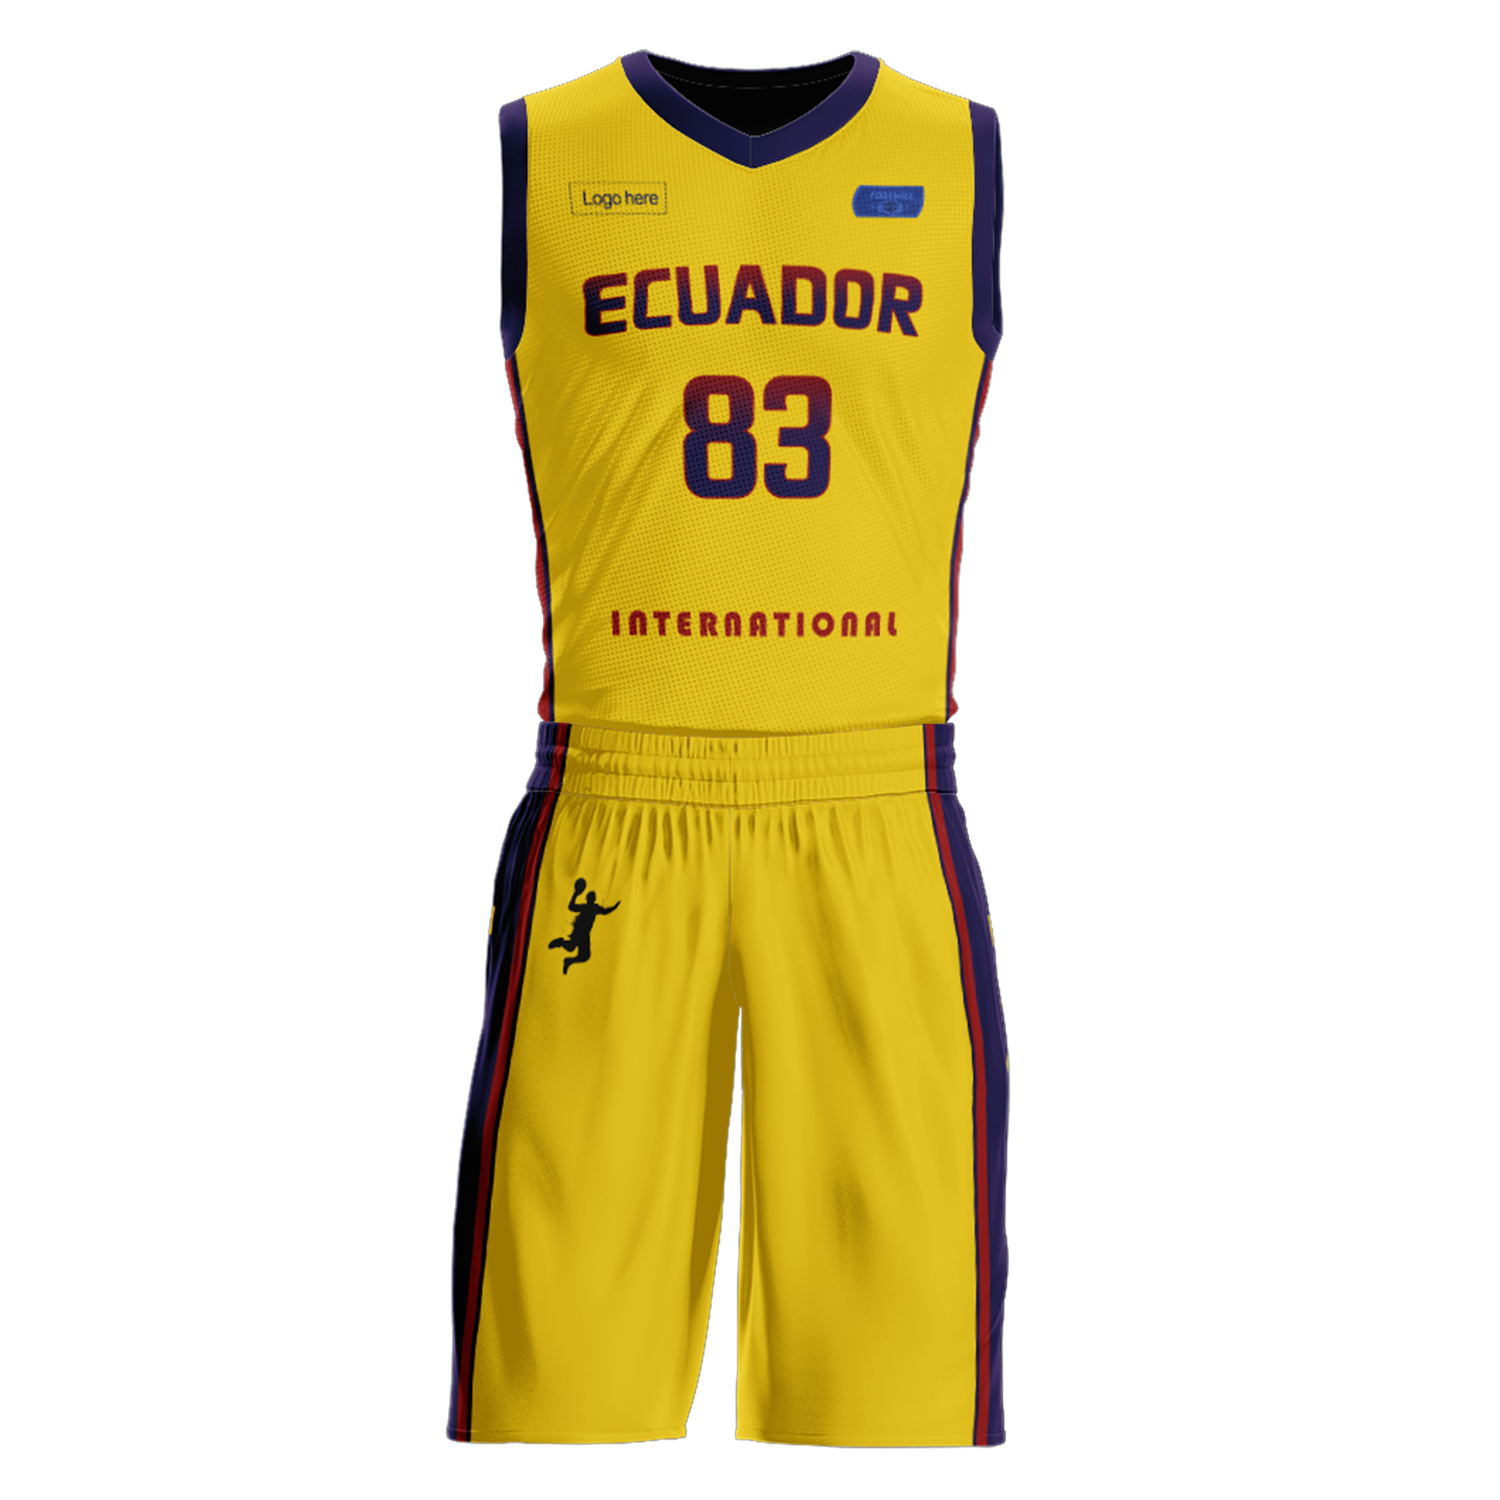 Изготовленные на заказ баскетбольные костюмы команды Эквадора